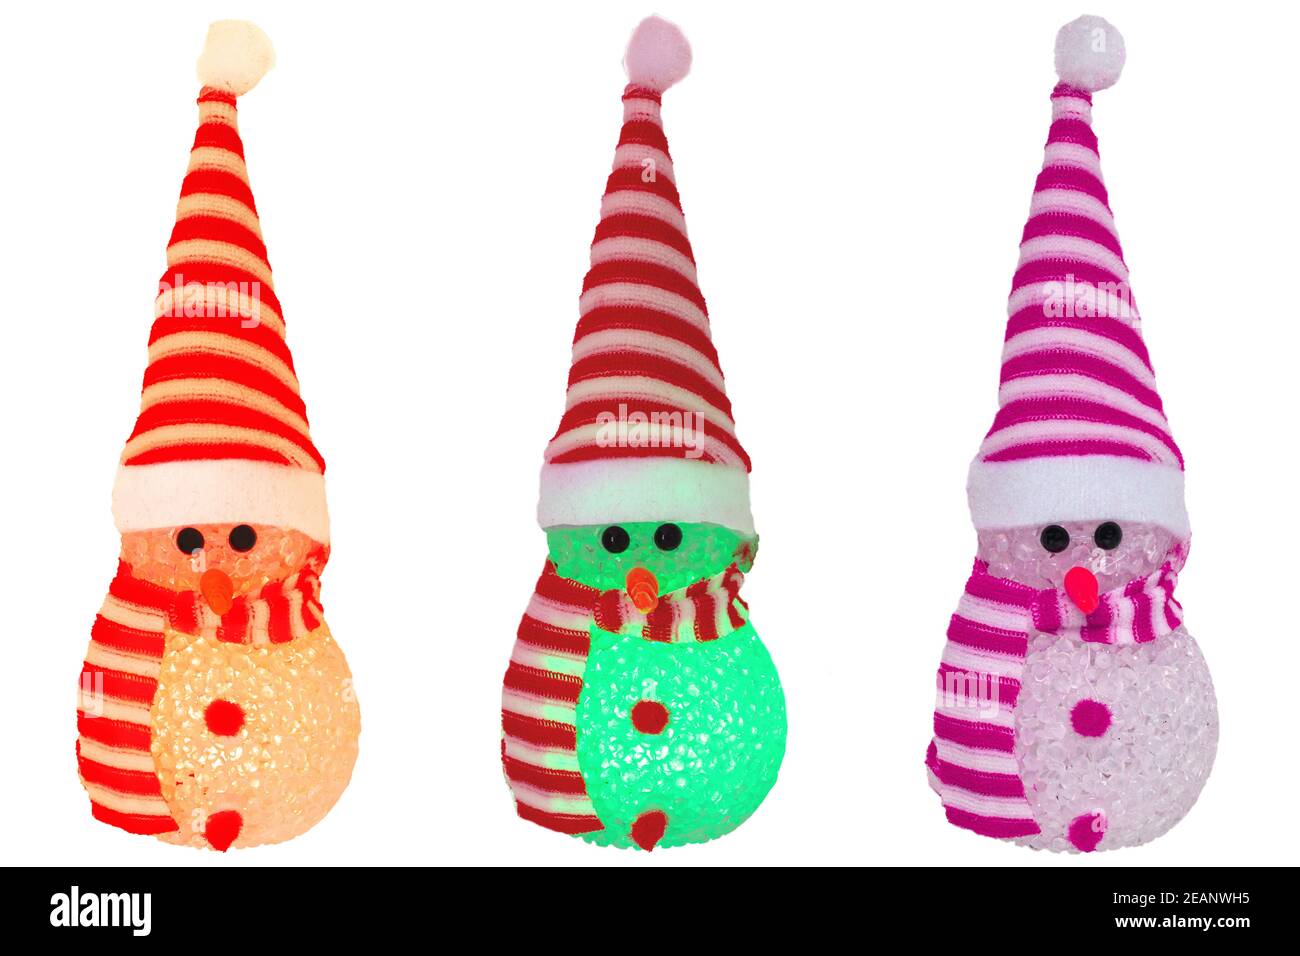 Weihnachtsdekoration Elemente isoliert. Nahaufnahme von drei verschiedenen farbigen beleuchtet glücklich niedlichen Winter Schneemann mit rot weiß gestreiften Hut und Schal isoliert auf einem weißen Hintergrund. Makrofotografie. Stockfoto